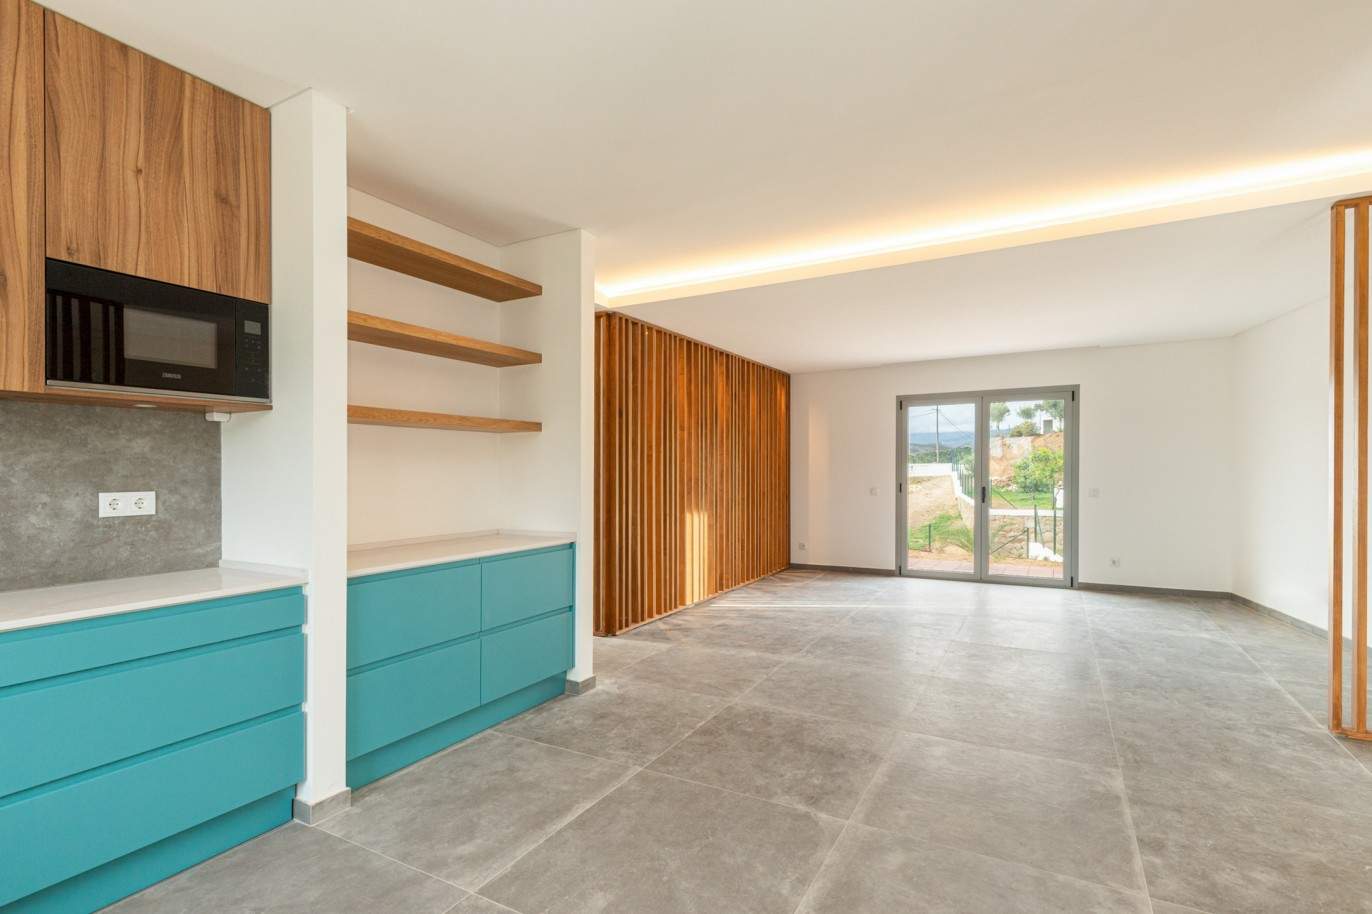 Villa de 3 dormitorios en venta en Portimao, Algarve_211003